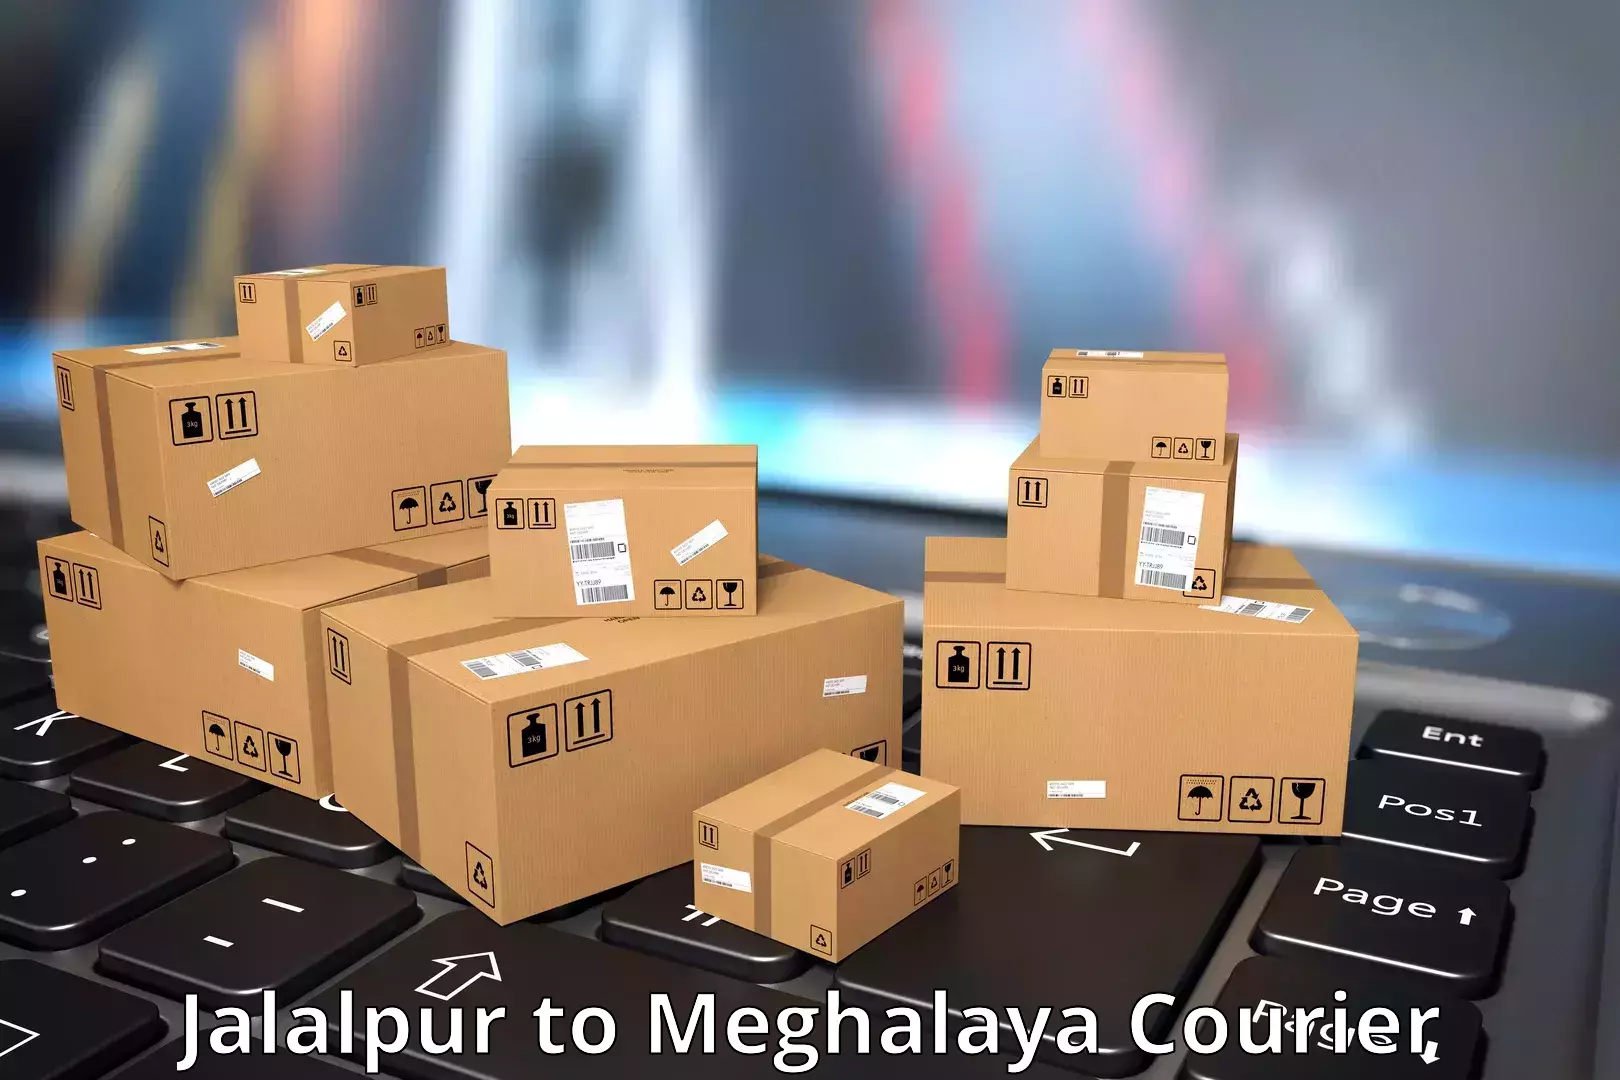 Reliable courier services Jalalpur to Jaintia Hills